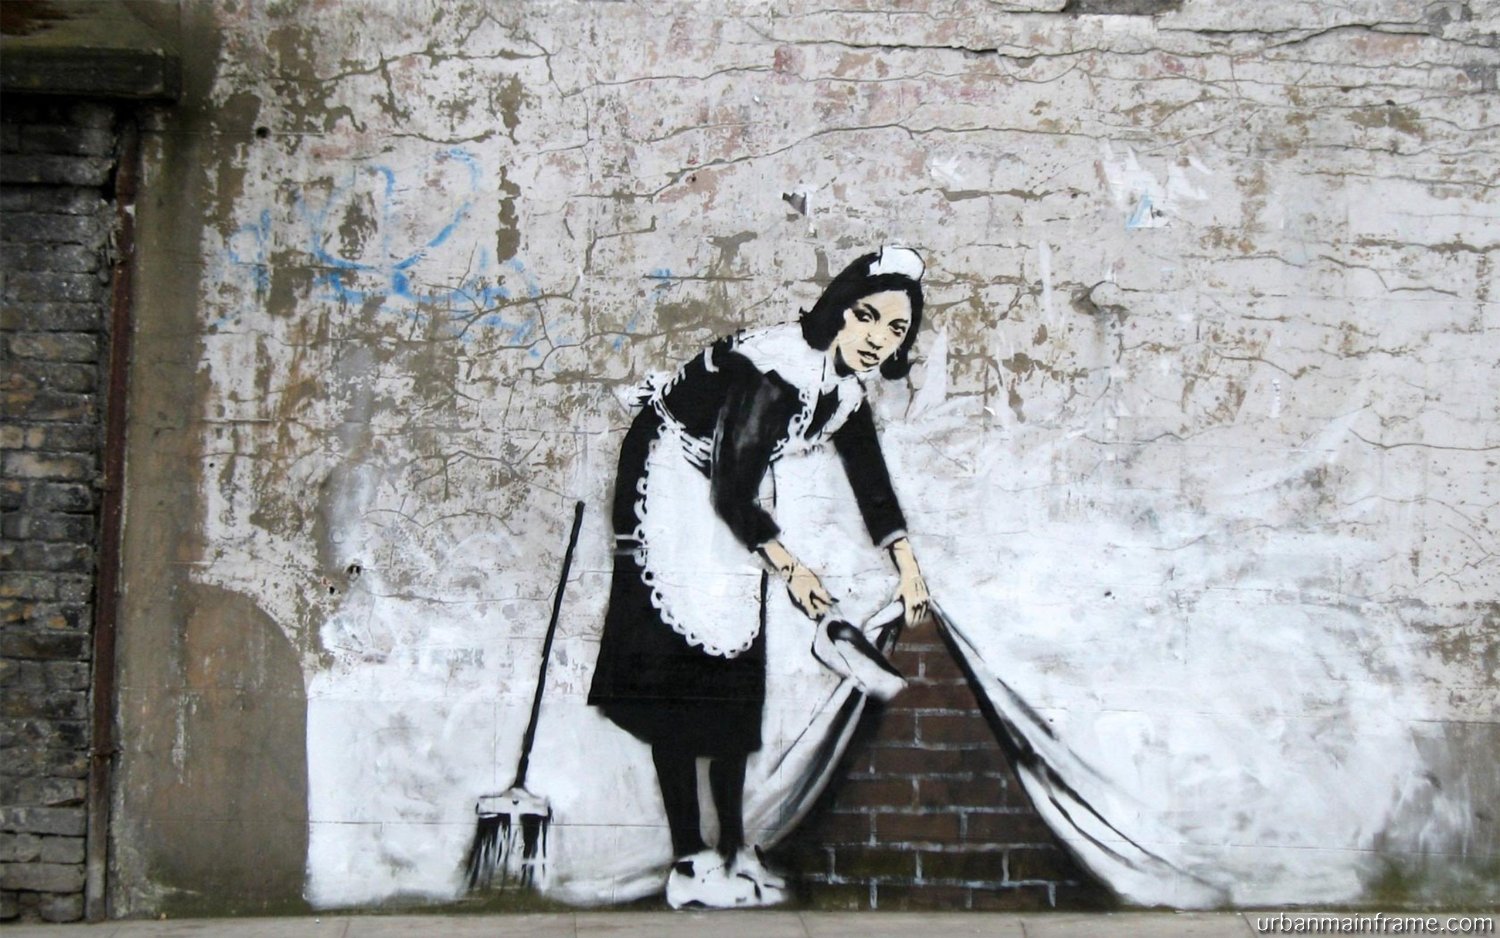 Zmieć pod dywan by  Banksy - 2006/2007 - - 